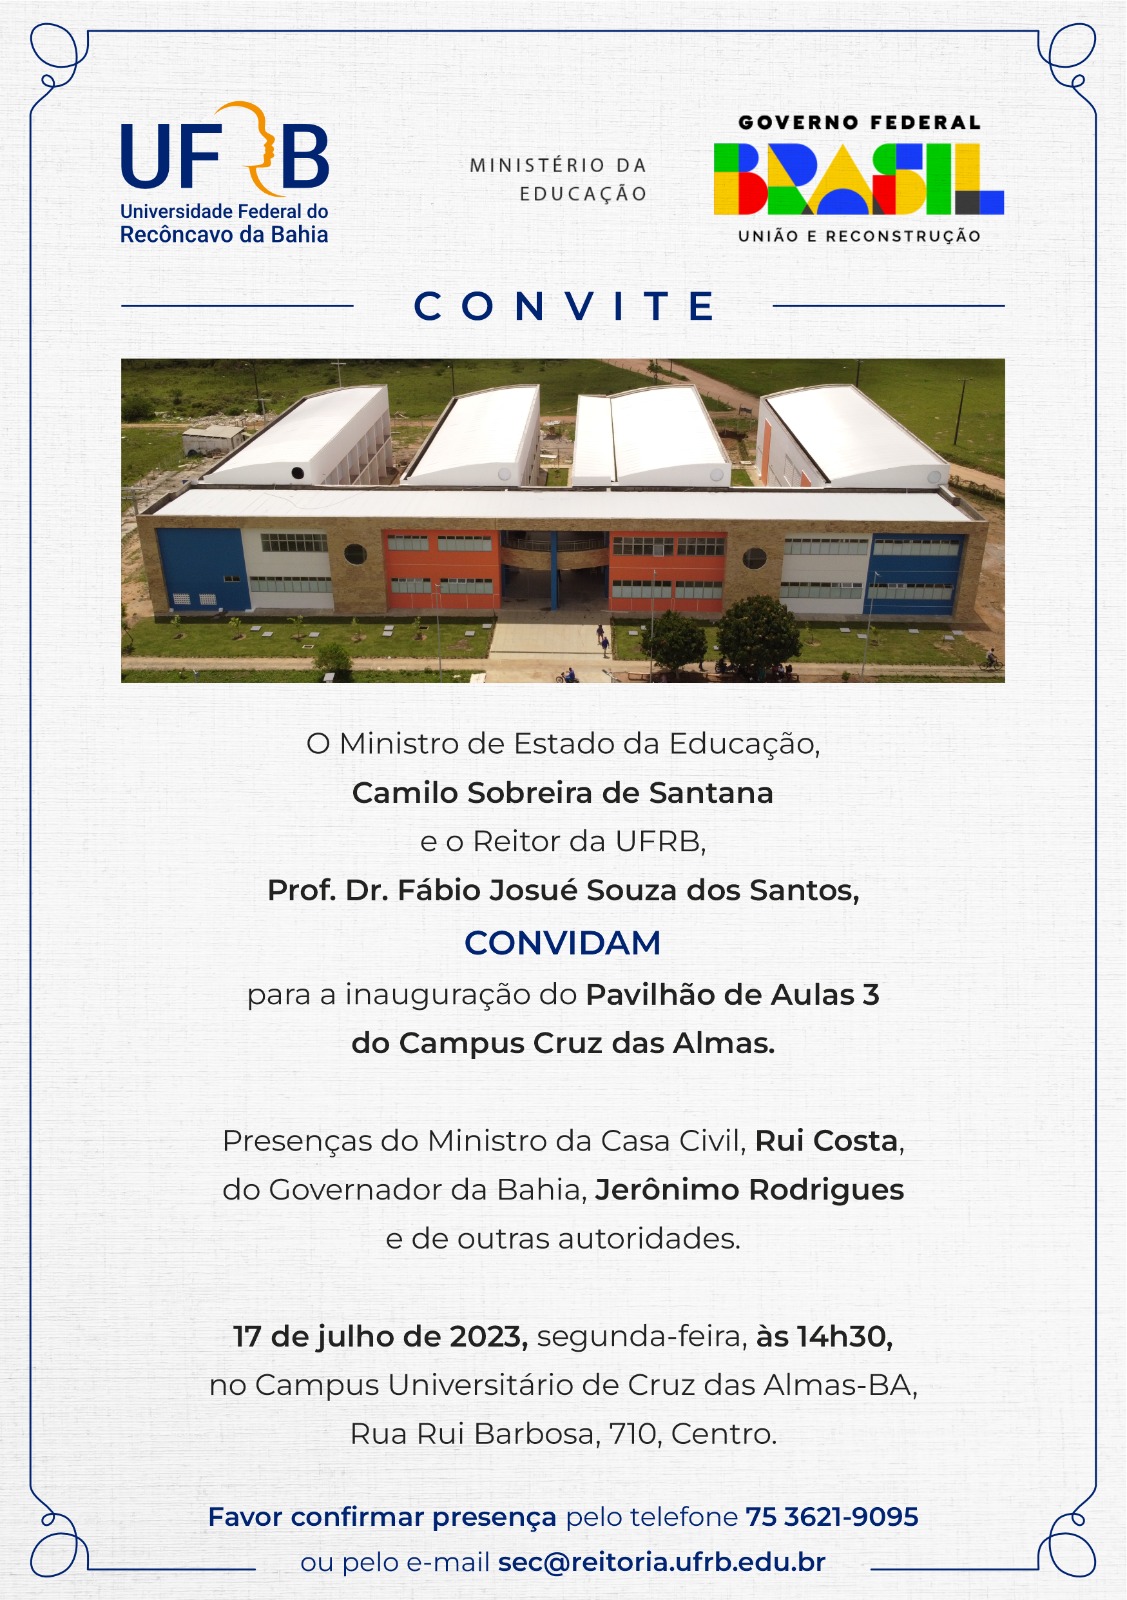 Convite para a inauguração do Pavilhão de Aulas 3 do Campus de Cruz das Almas